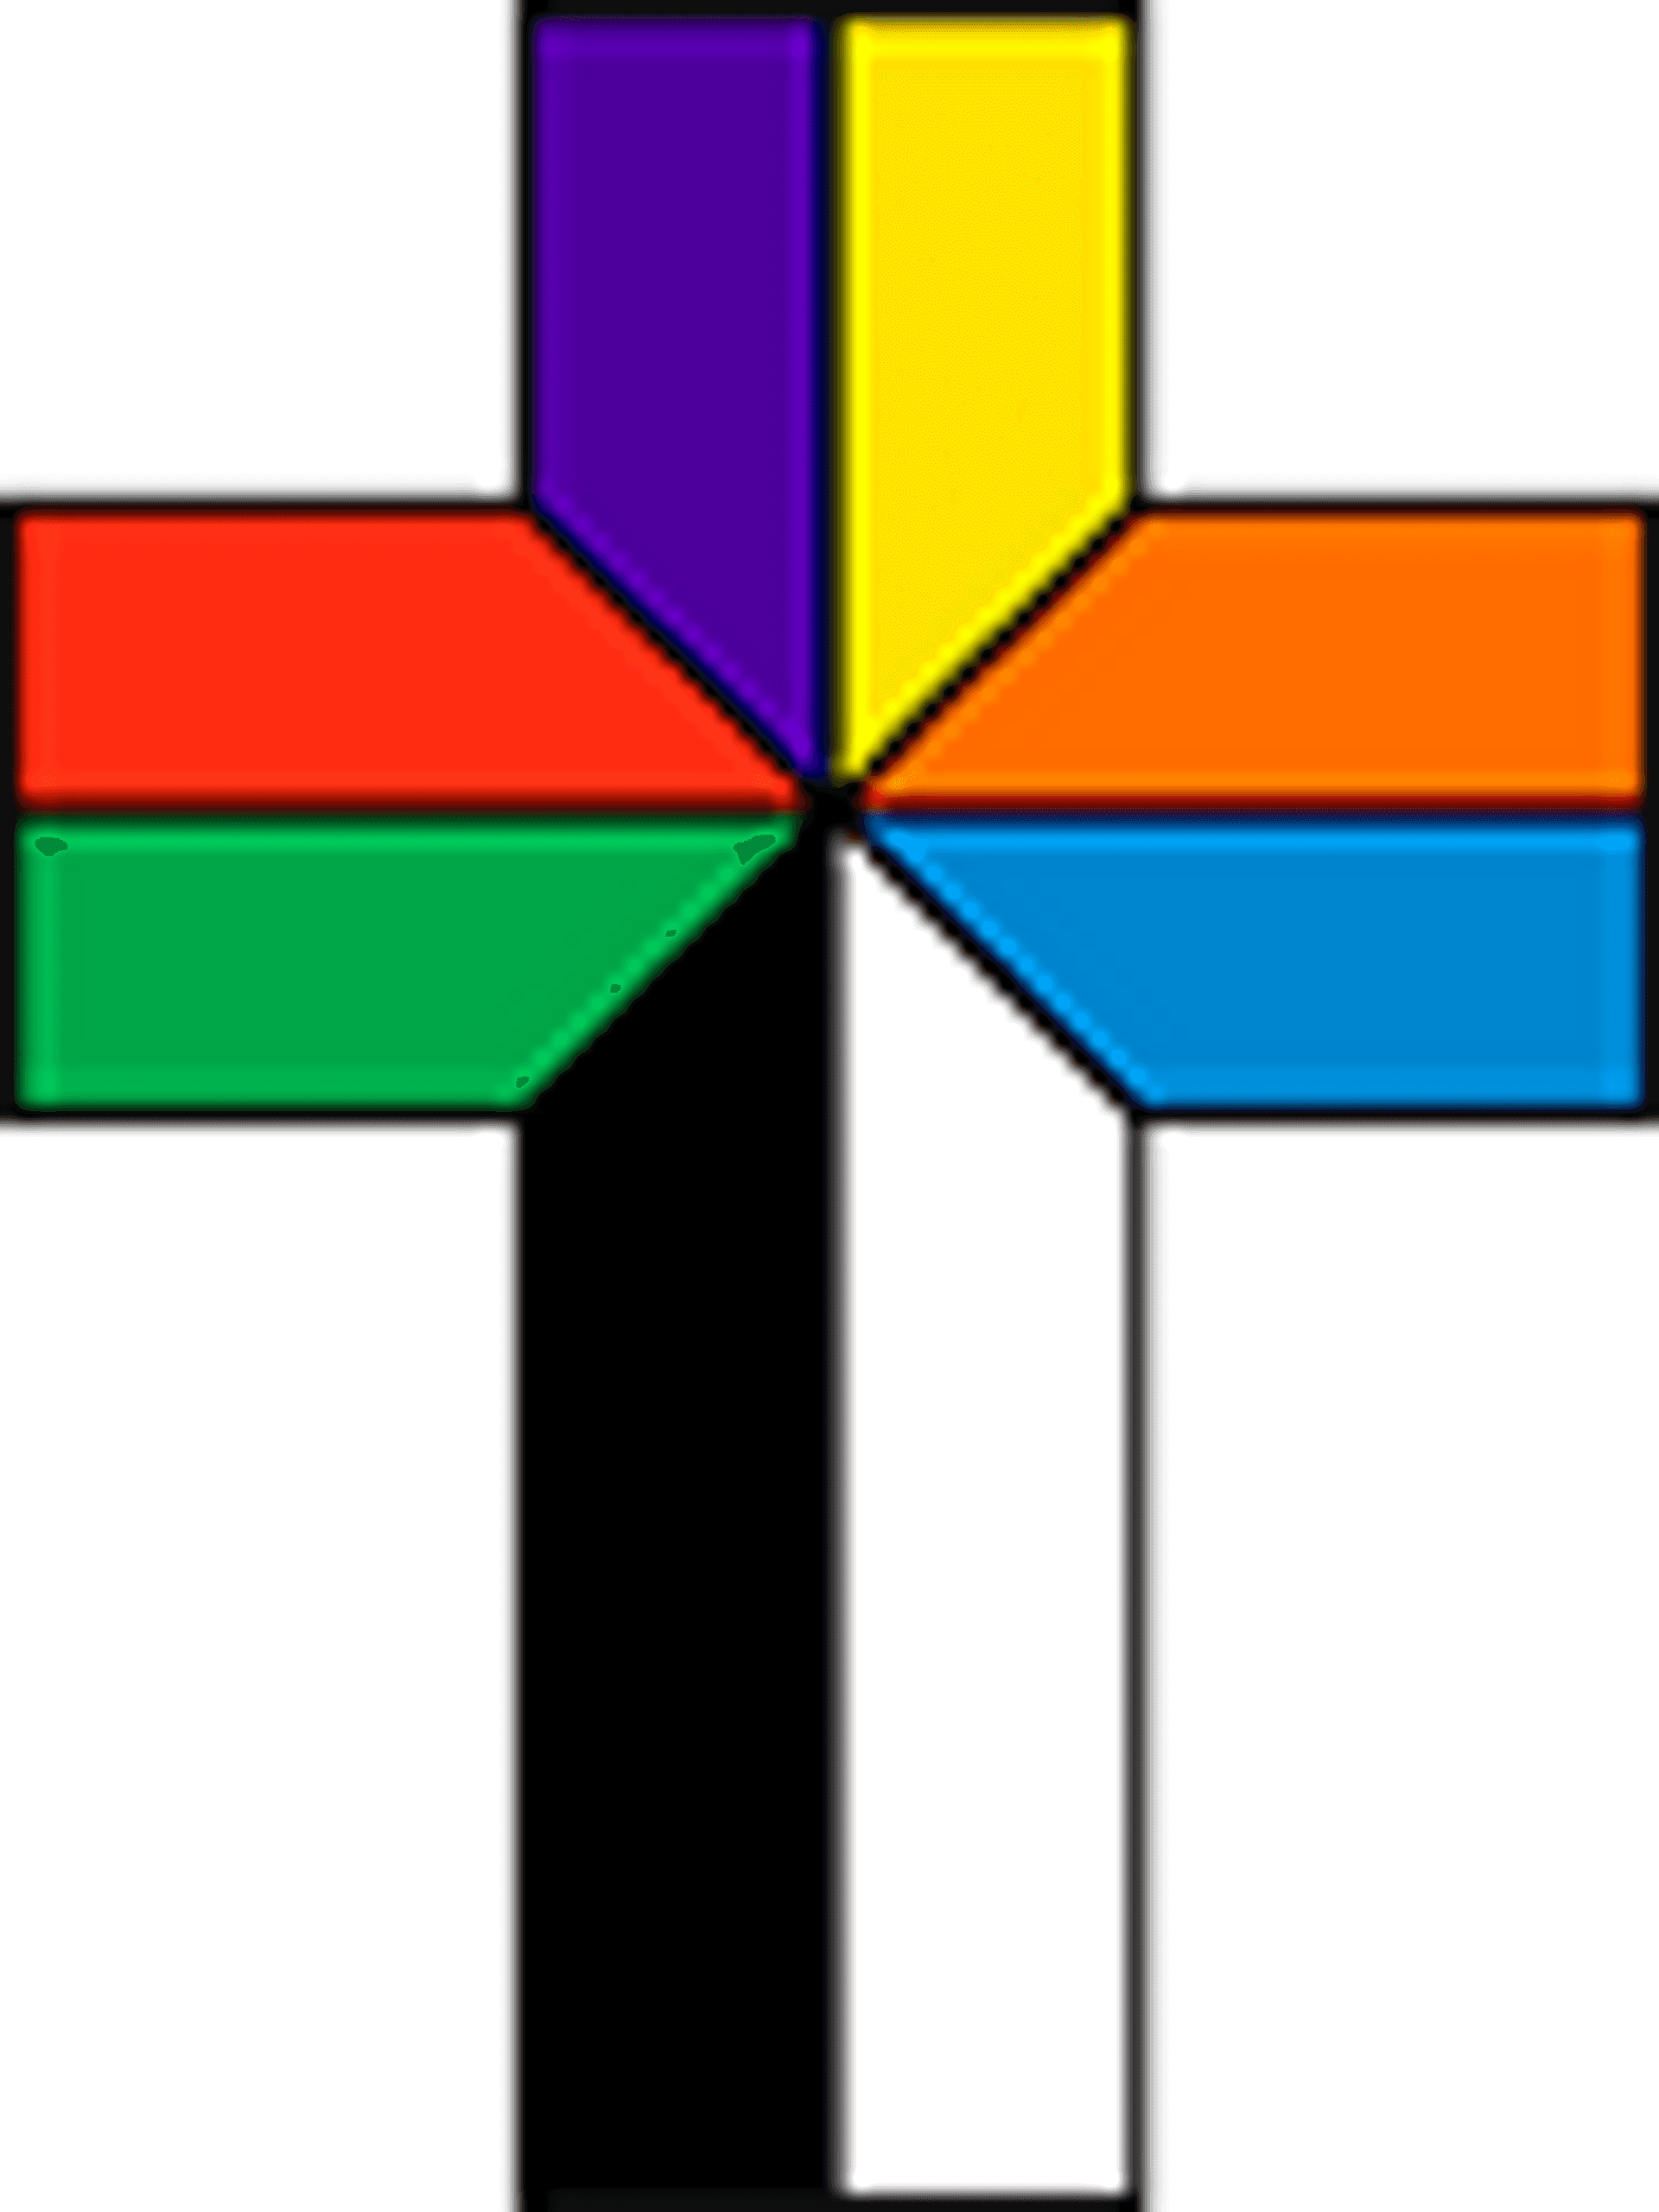 Calvary cross drawn in colors